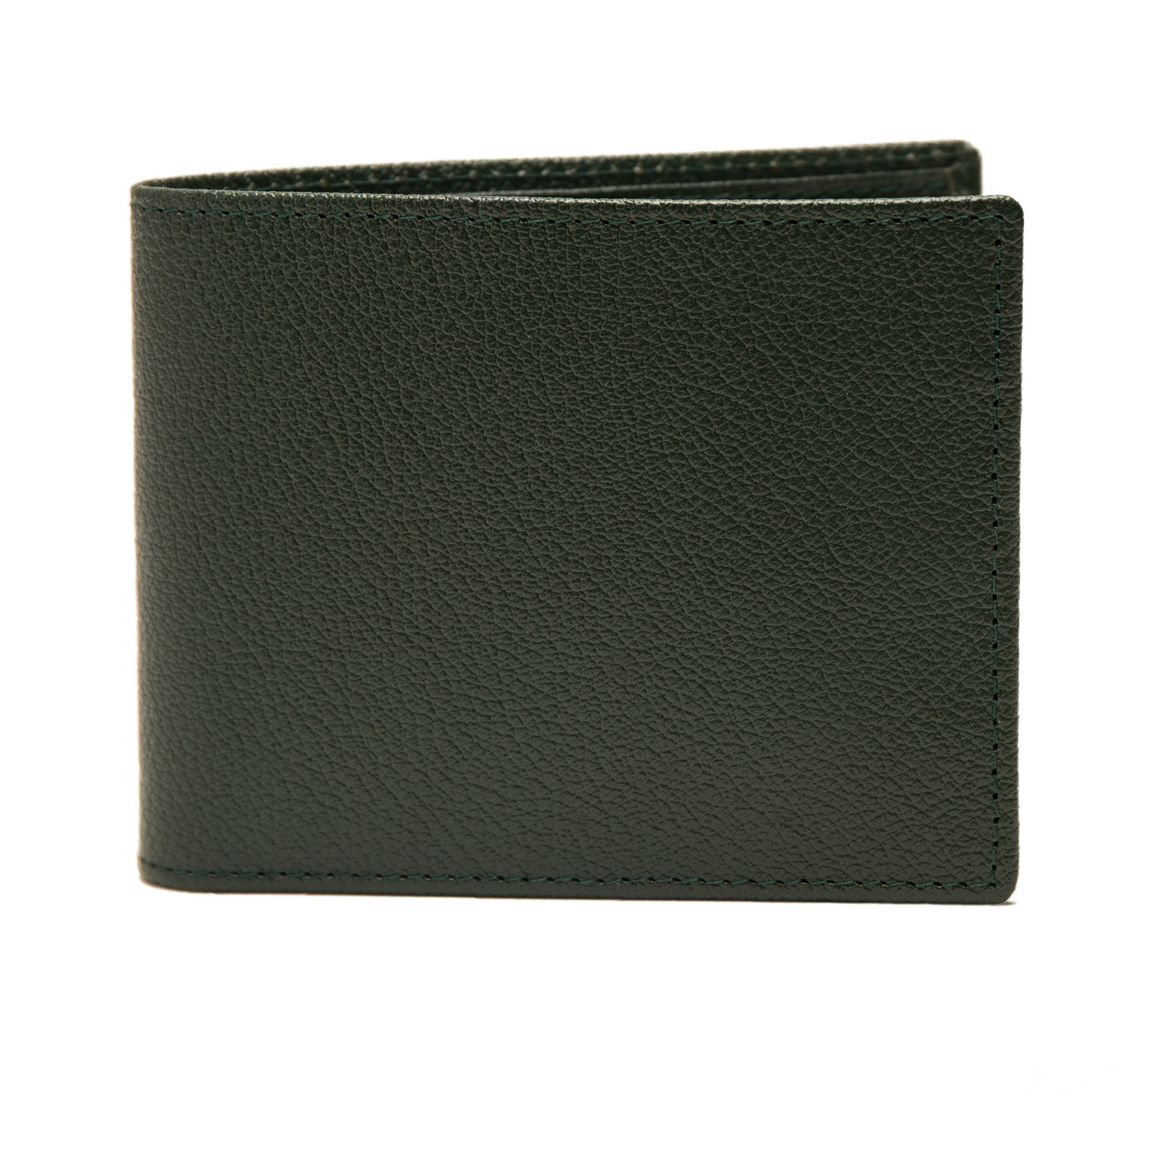 Ettinger Billfold Wallet - Forest Green Capra Leather